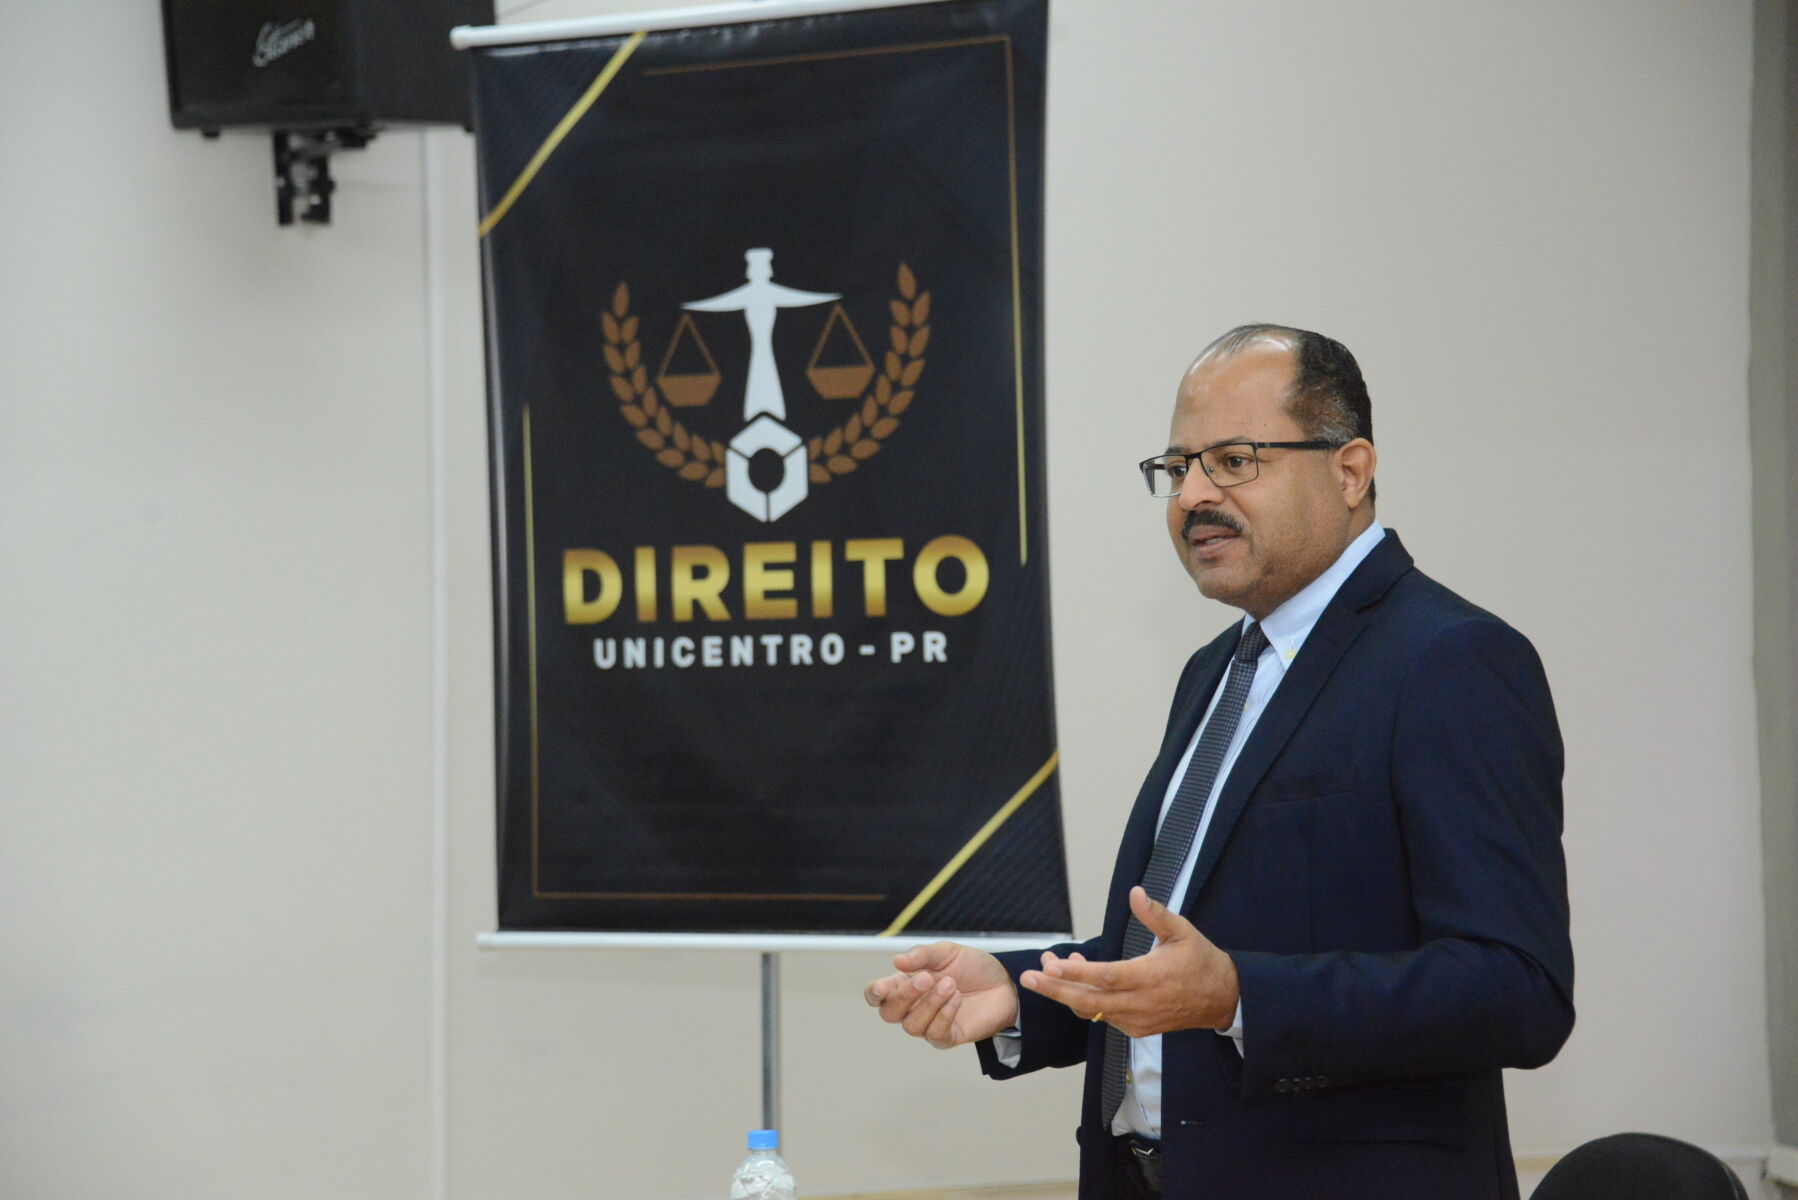 Departamento de Direito da Unicentro realiza palestra em comemoração ao Dia do Advogado